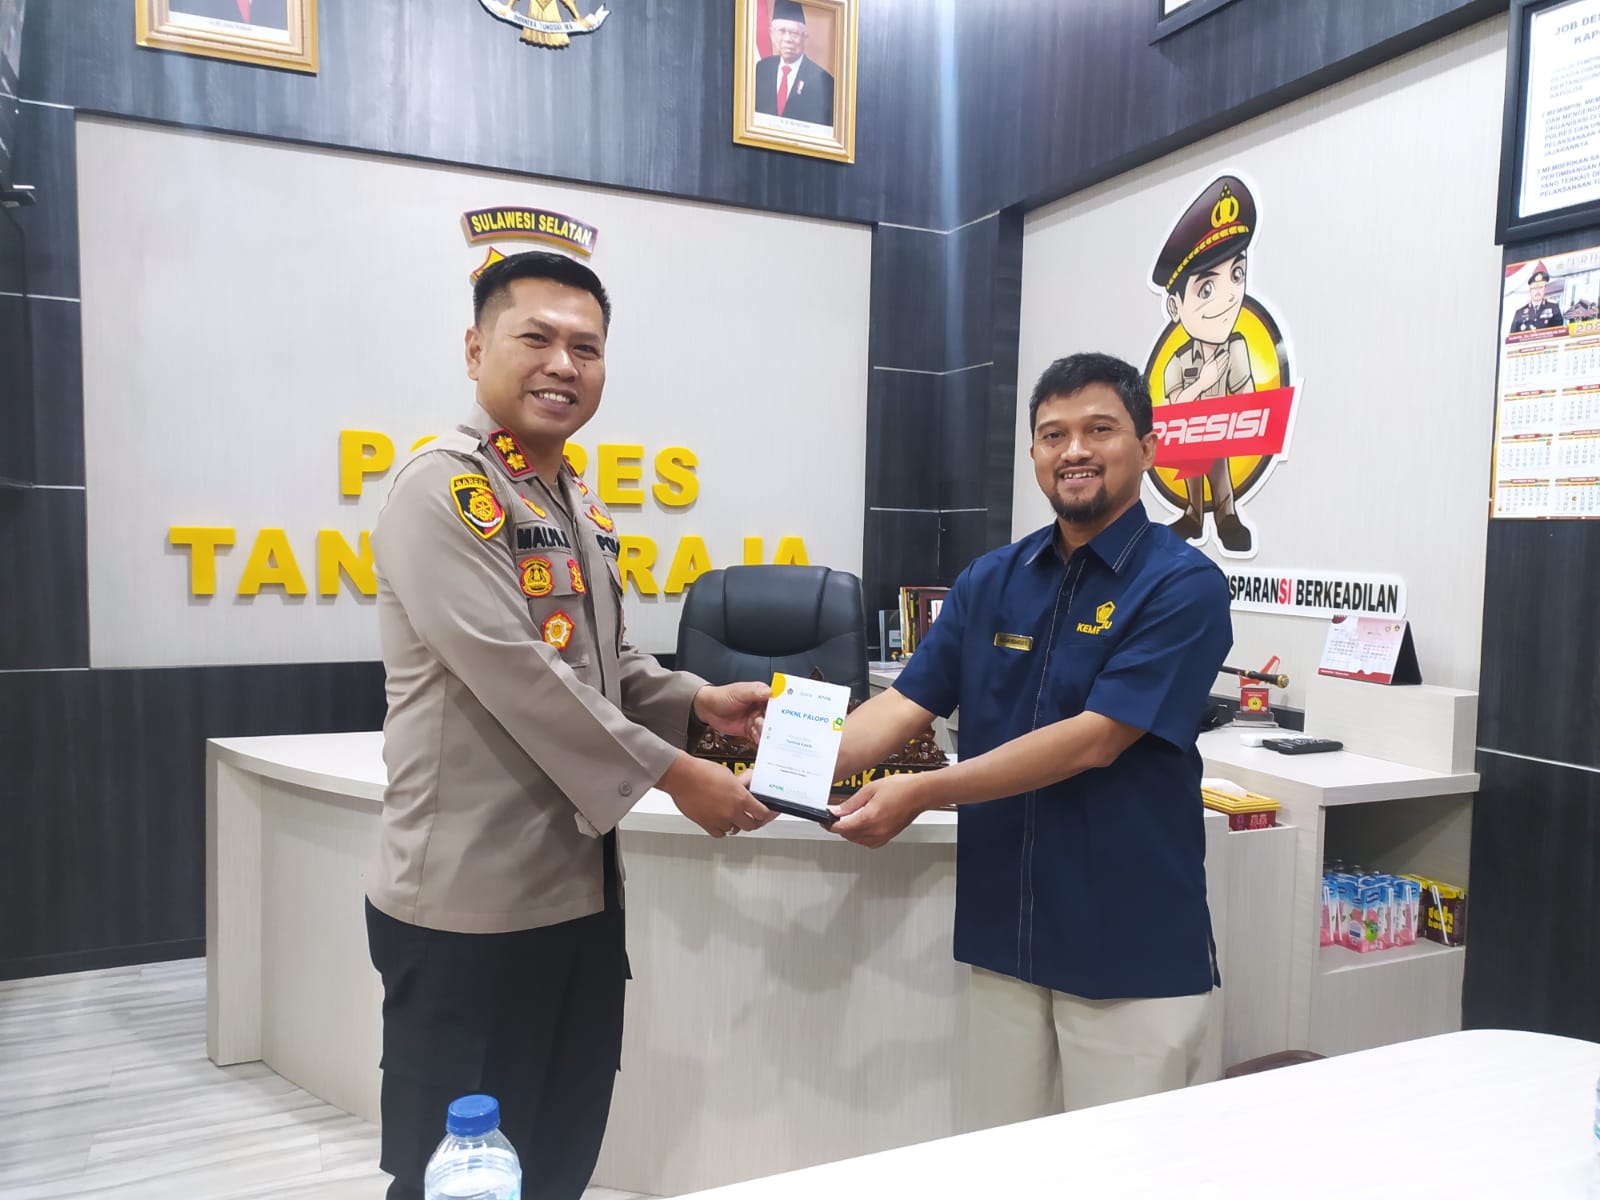 Tingkatkan Sinergi, Kepala KPKNL Palopo Beserta Jajaran Laksanakan Rangkaian Kunjungan ke Stakeholders di Kabupaten Tana Toraja